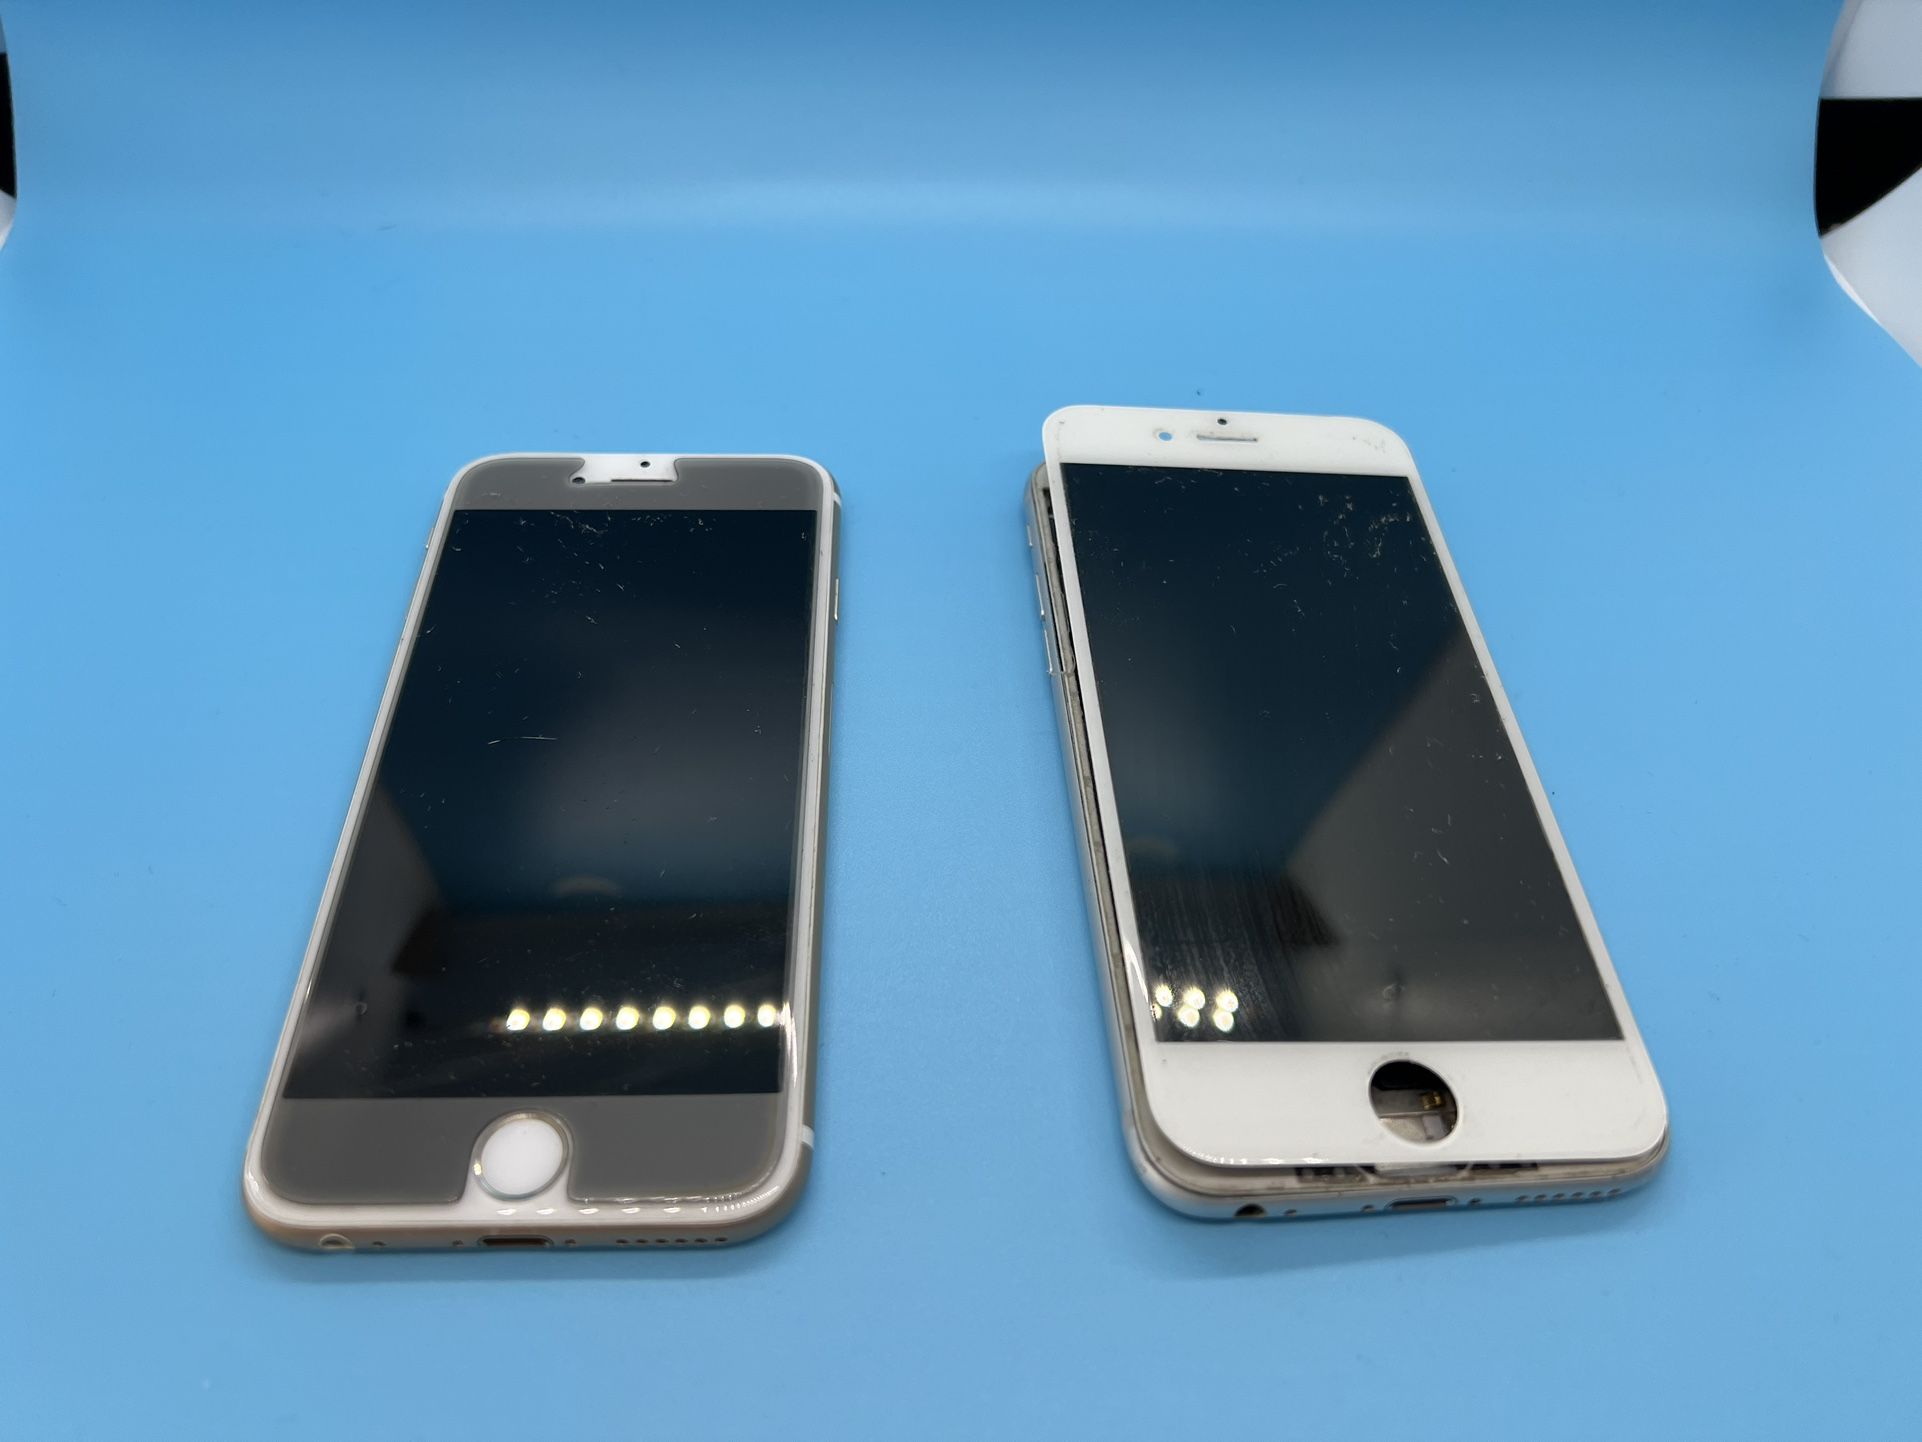 2 Apple iPhone 6 Models For Repair 